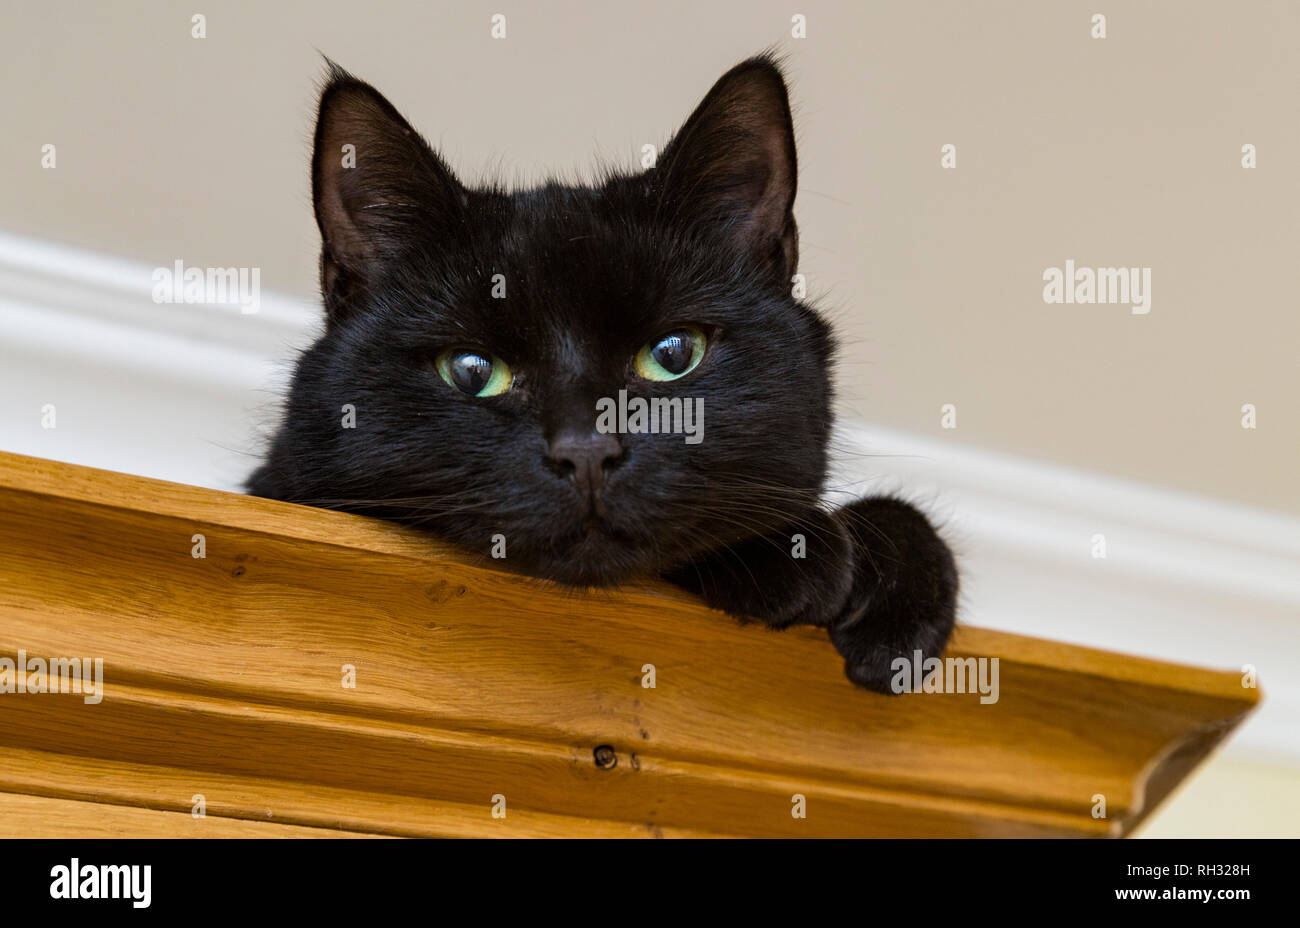 Un jeune chat noir assis sur le dessus d'une armoire en bois Banque D'Images